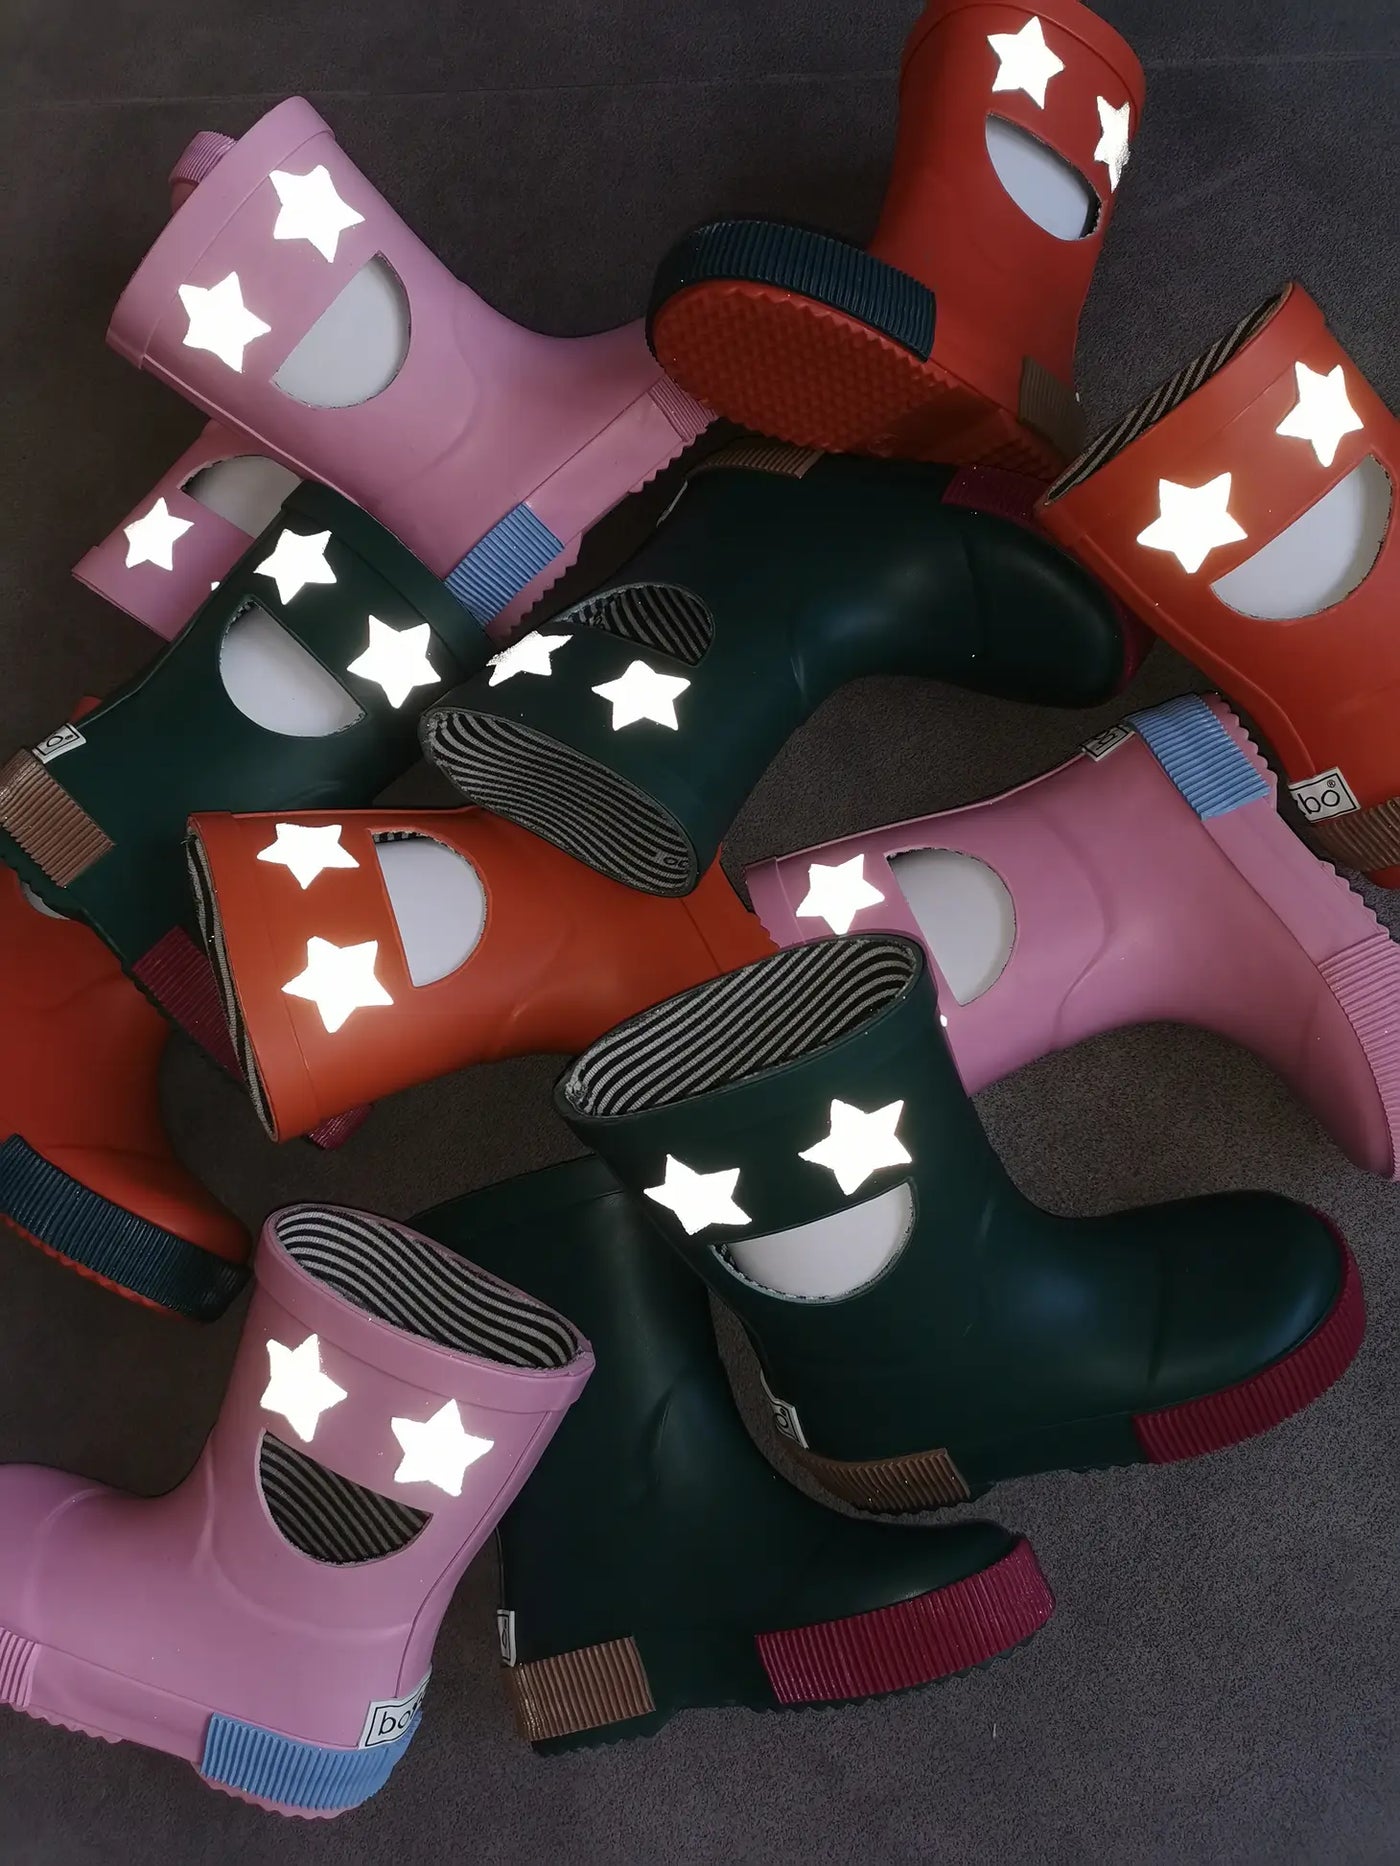 Wistiti Star Boots